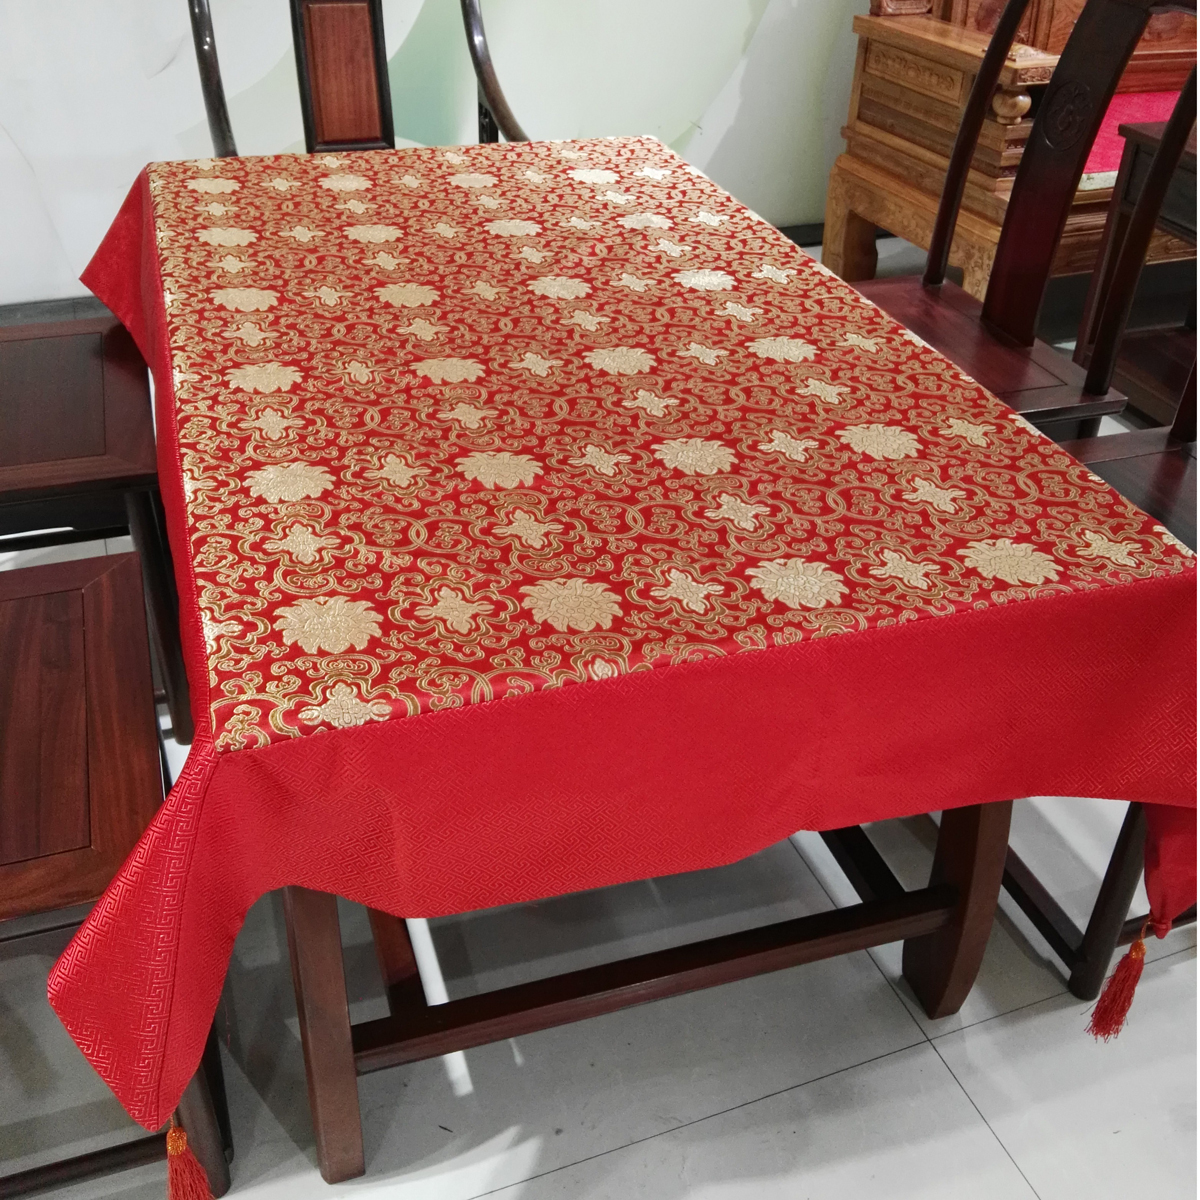 现代中式餐桌布中国风古典茶几布红木家具盖布正方长方形圆桌布艺